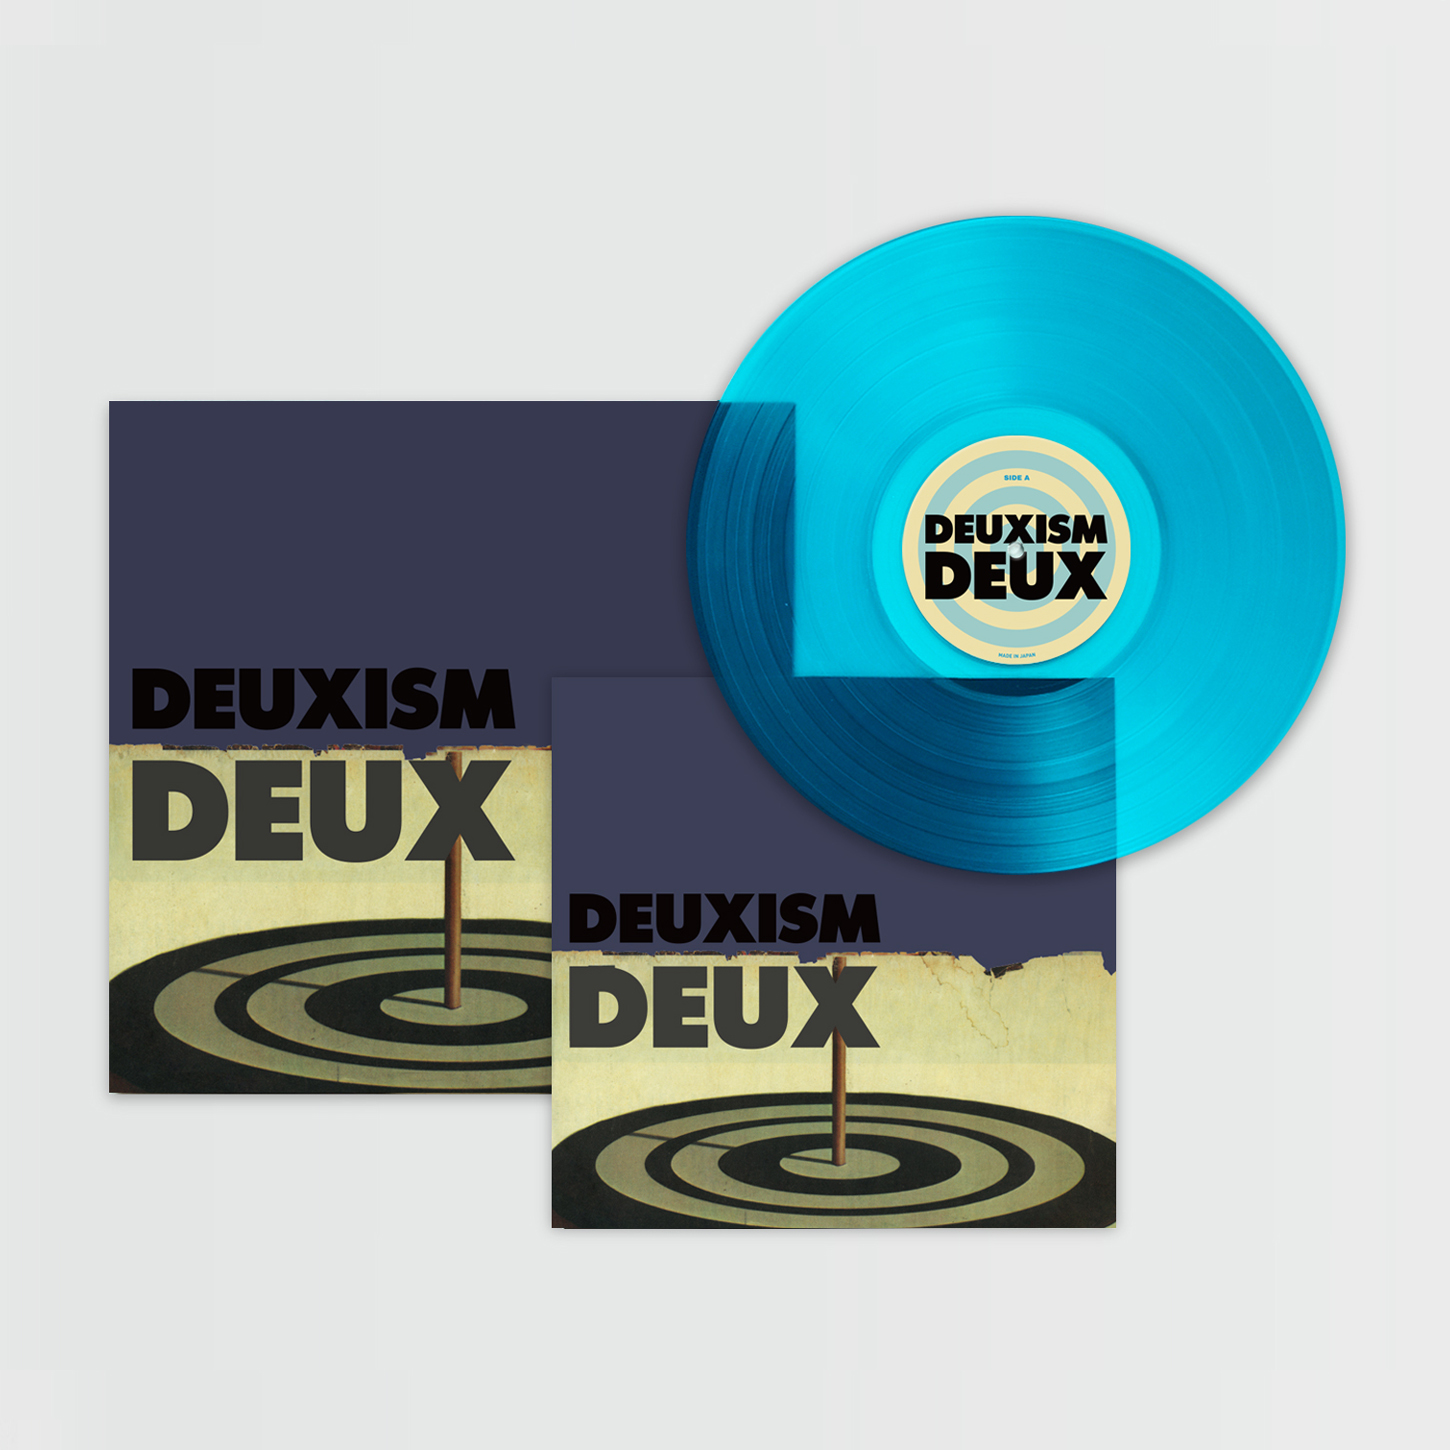 예약판매[PRE-ORDER] 듀스 (DEUX) - 2집 [30주년 기념반, 투명 블루 컬러 LP]